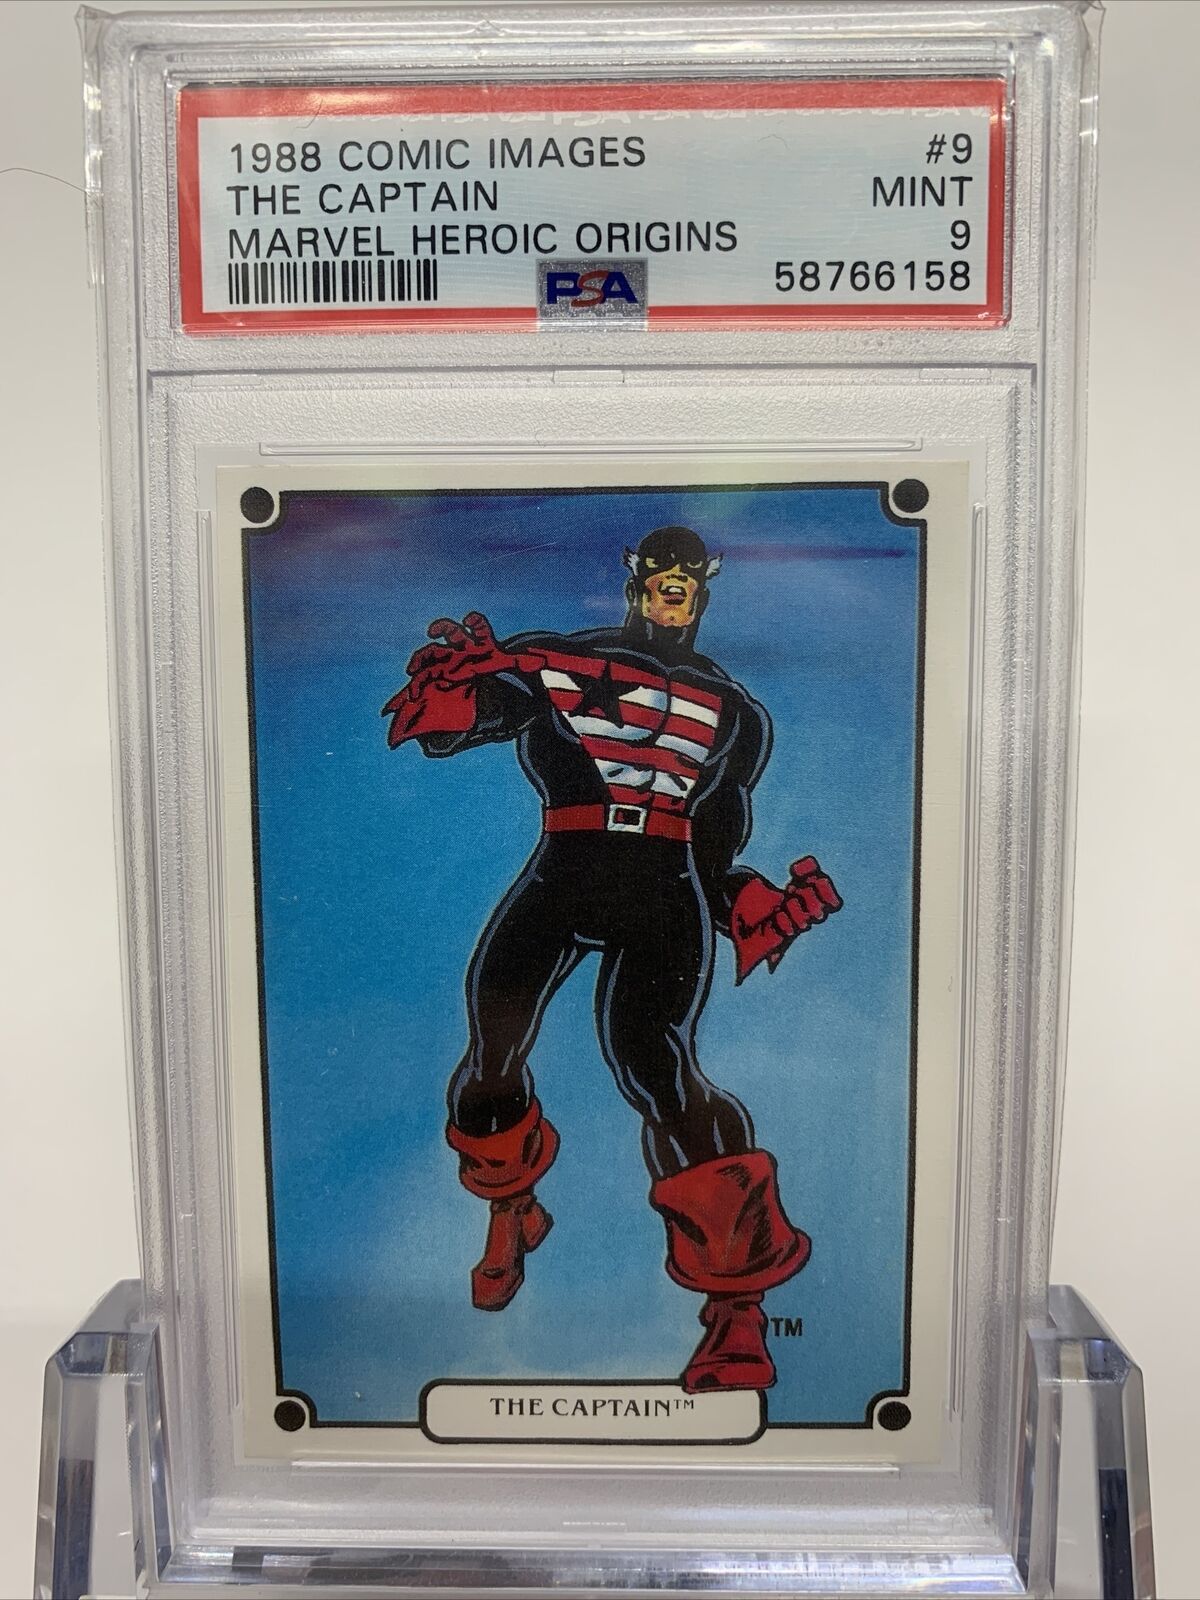 1988 Comic Images The Captain #9 Marvel Heroic Origins Card PSA 9 Mint MCU Pop 1